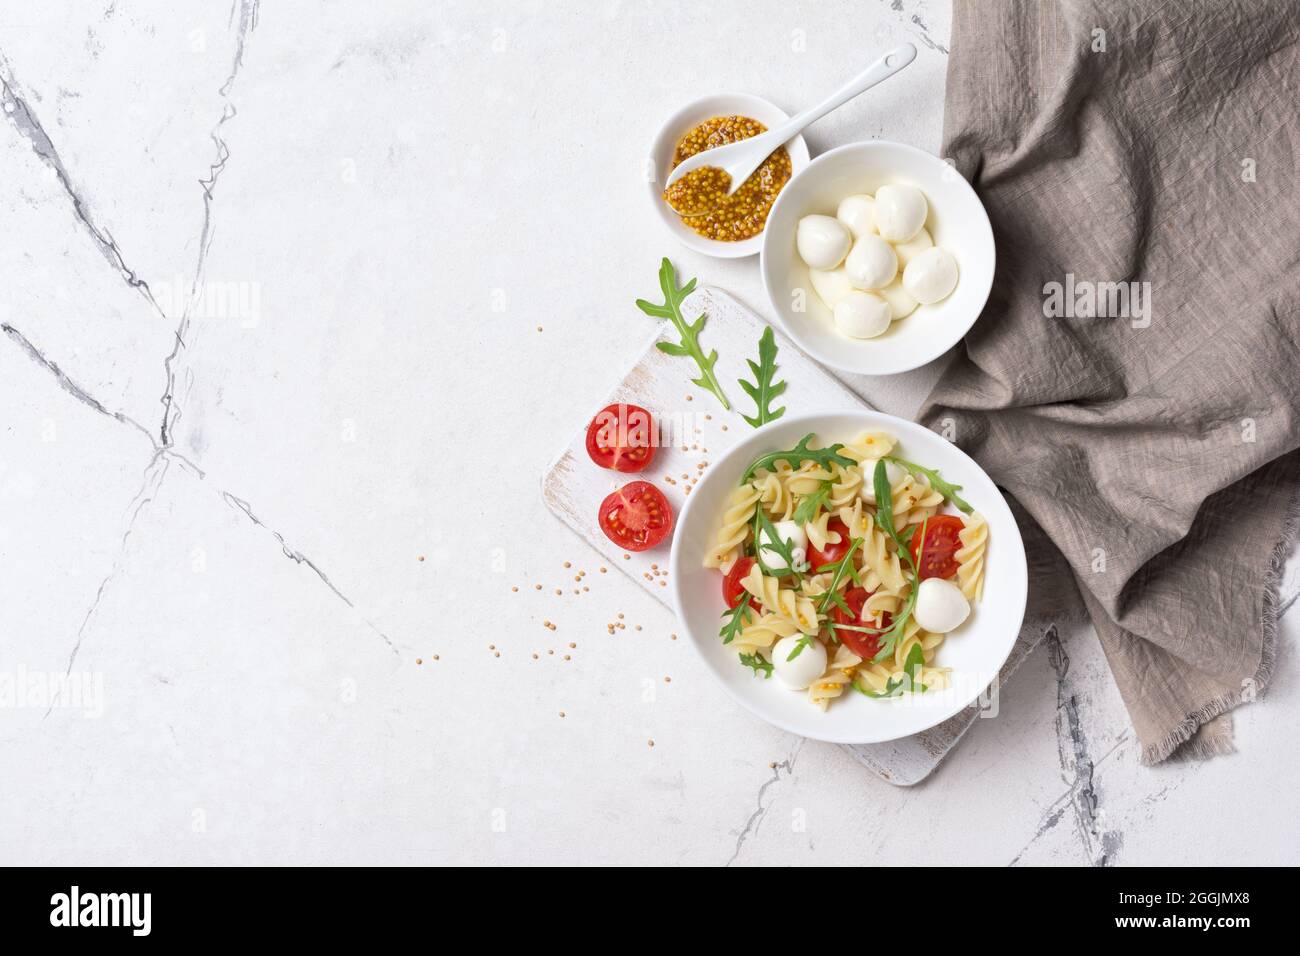 Vista dall'alto della gustosa pasta vegetariana con pomodori ciliegini, mozzarella di formaggio morbido, salsa di senape e foglie di rucola verde su sfondo bianco di marmo Foto Stock